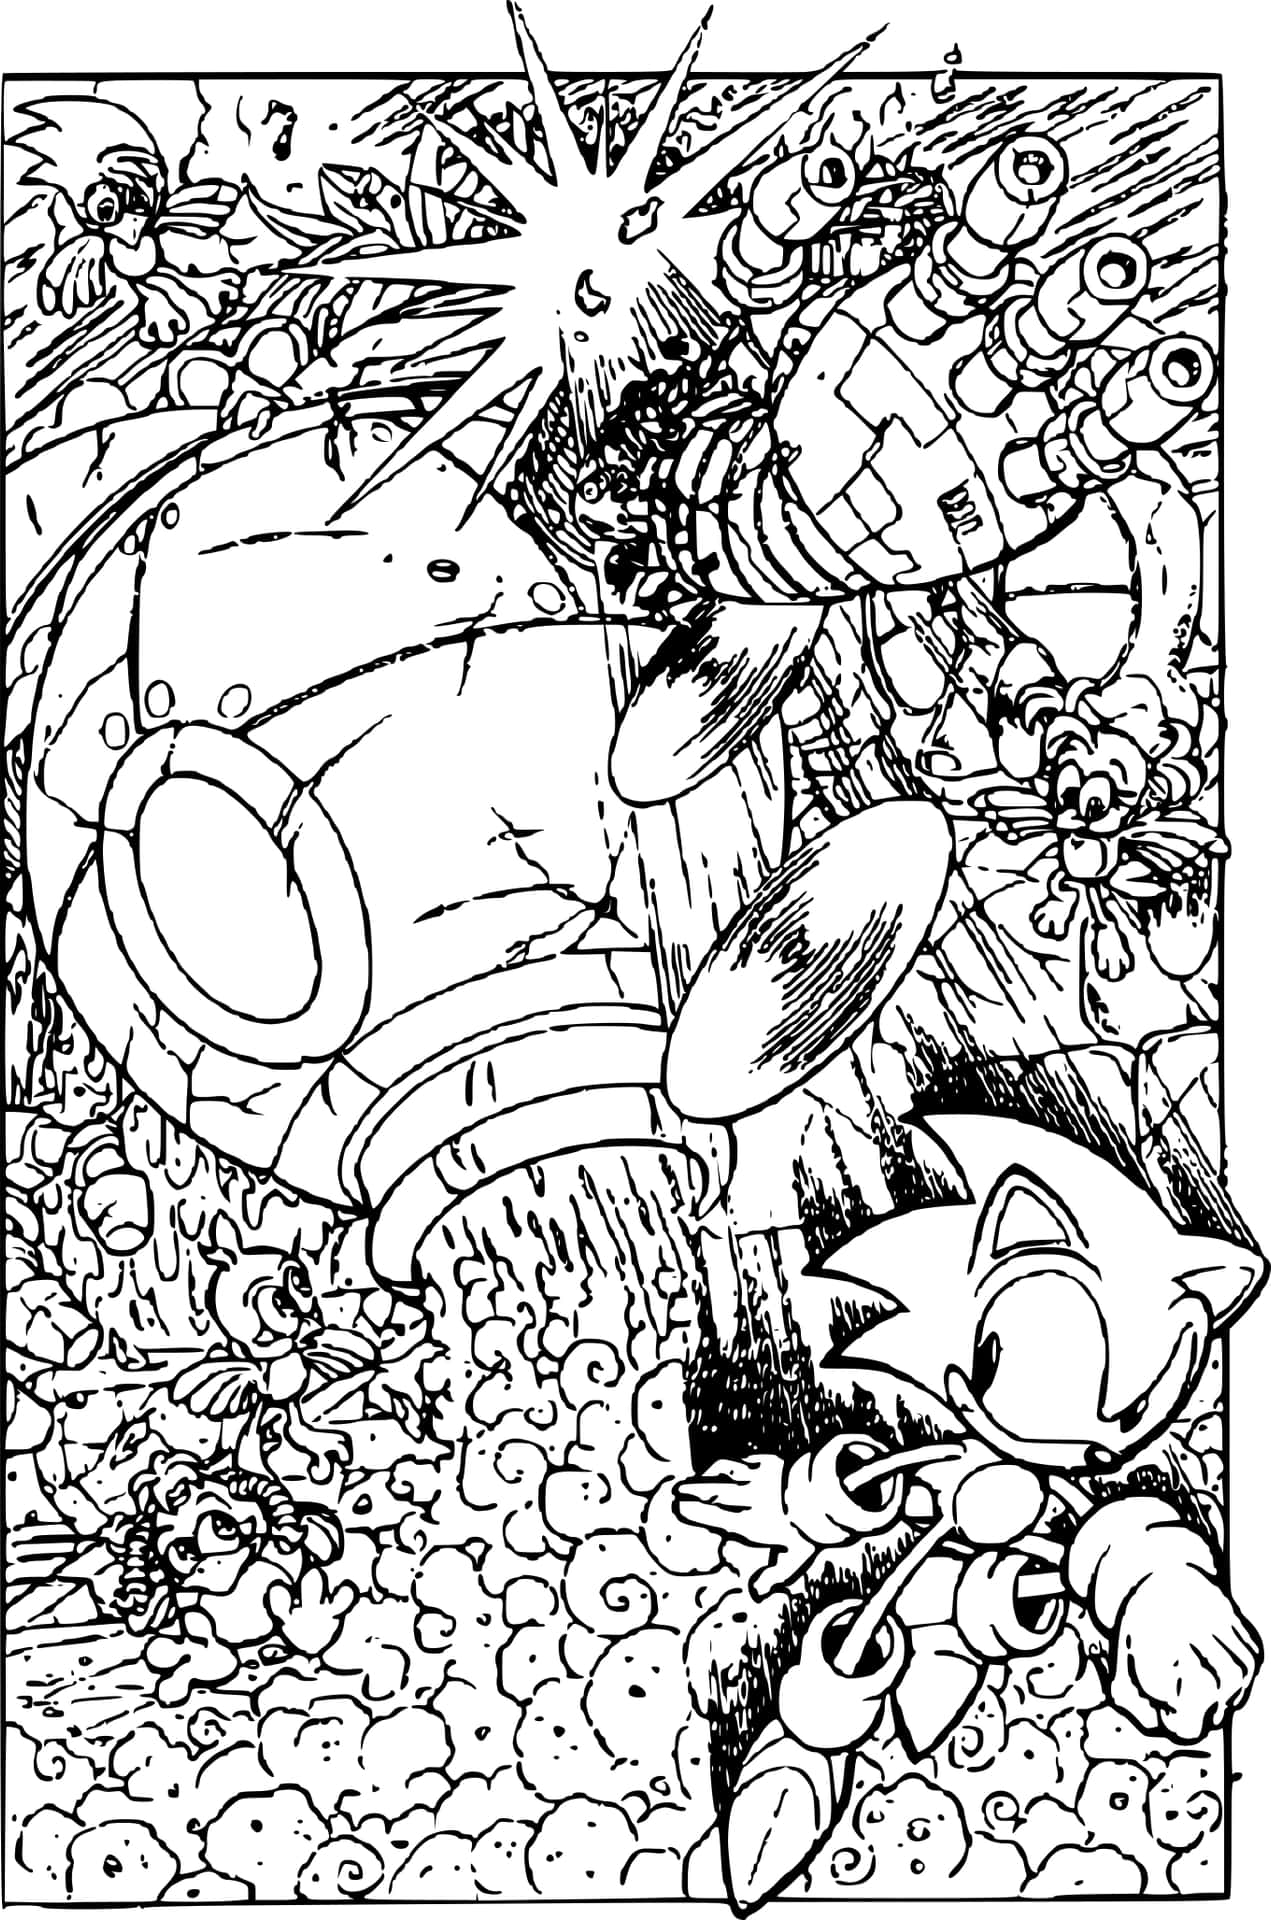 Scenadi Lotta Di Colorazione Di Sonic Con L'immagine Del Robot Death Egg